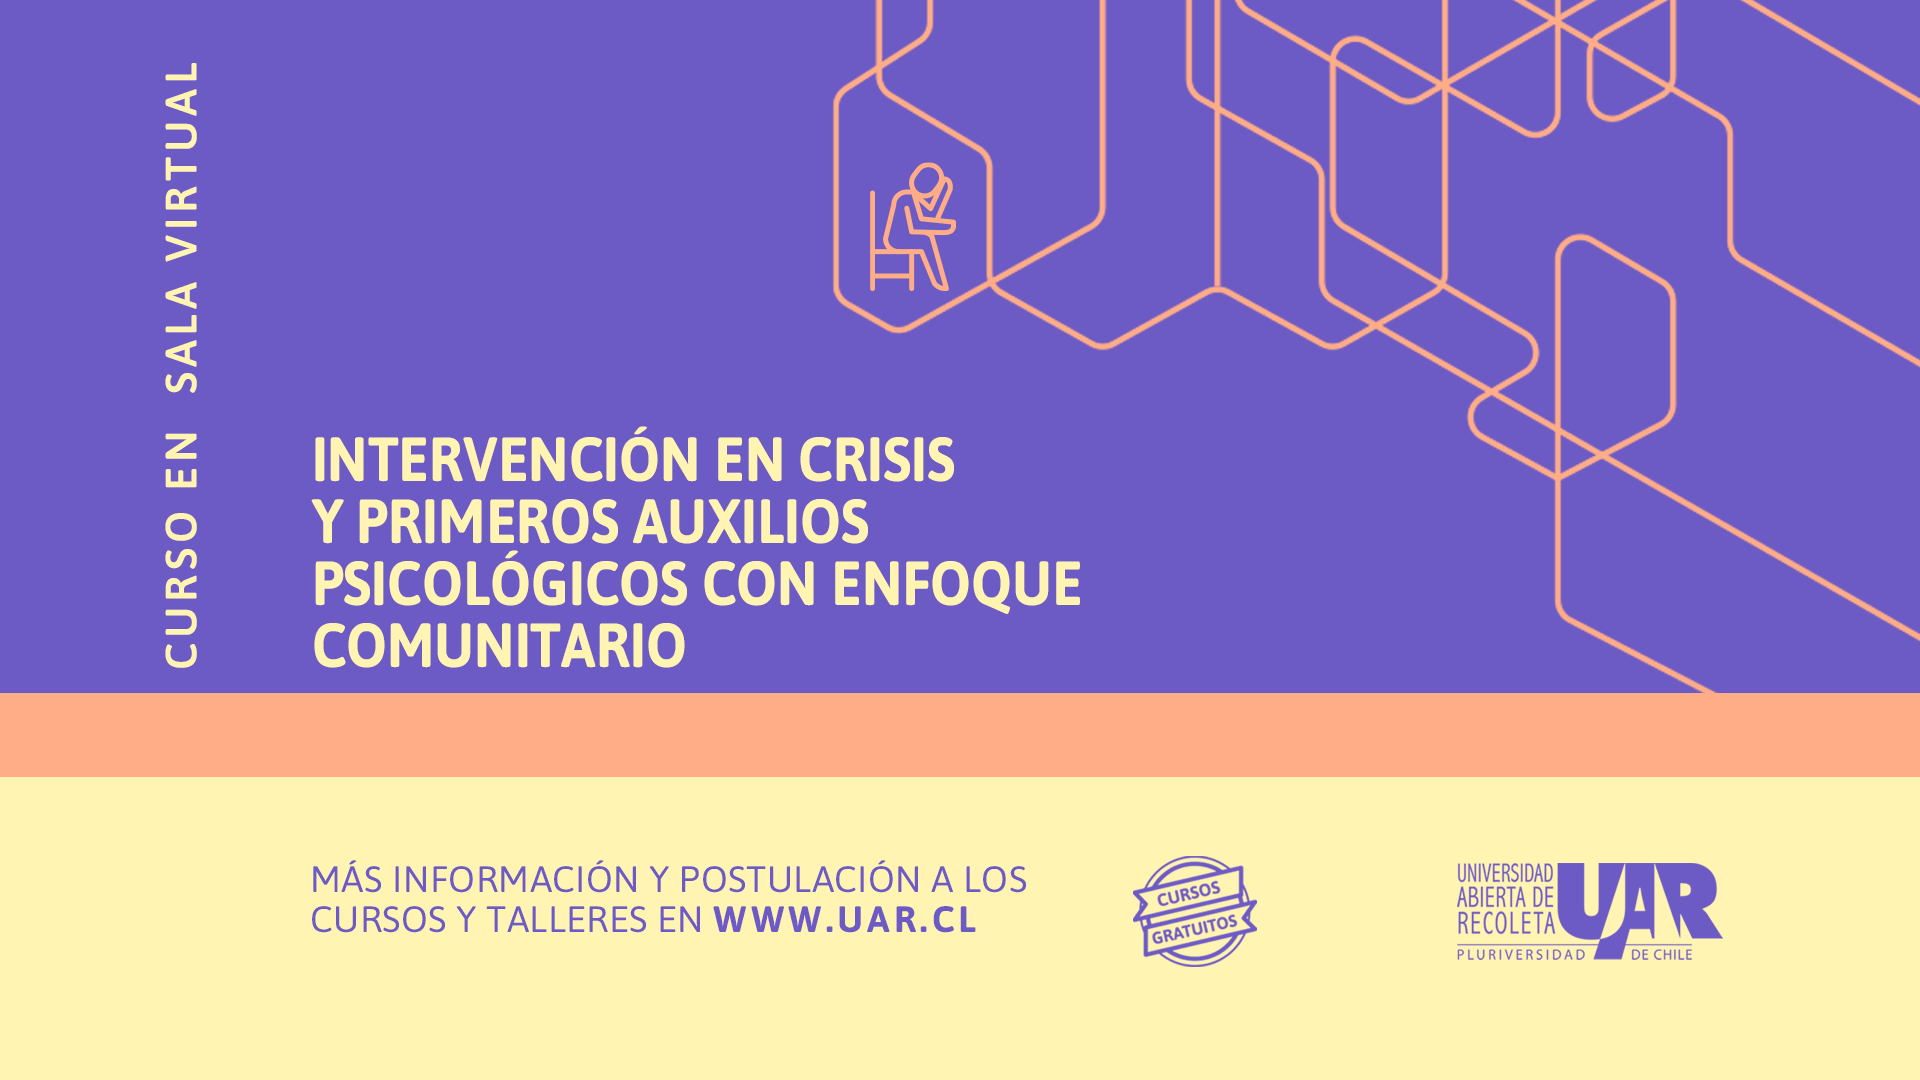 Taller de Primeros Auxilios - Universidad de Chile